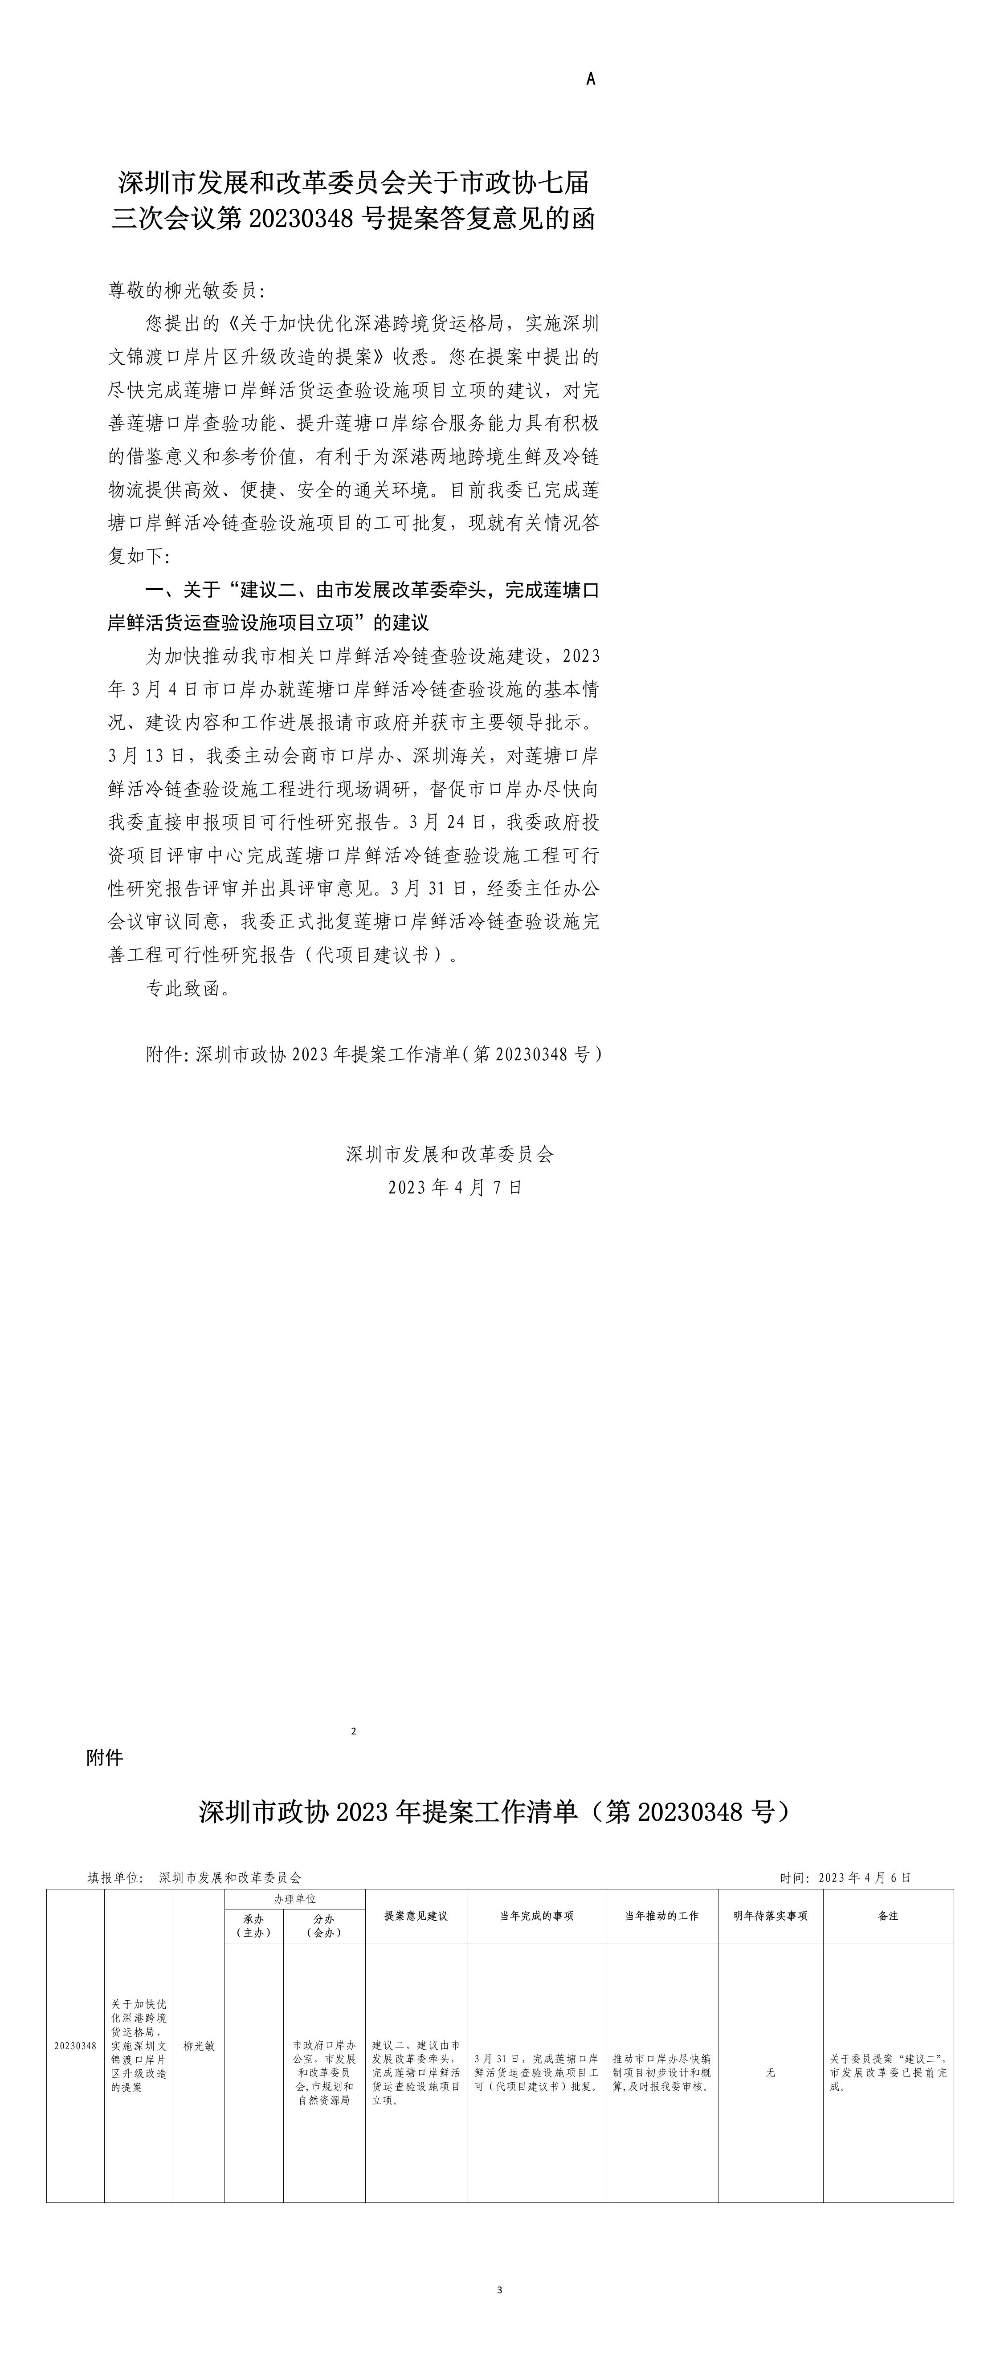 深圳市发展和改革委员会关于市政协七届三次会议第20230348号提案答复意见的函.jpg